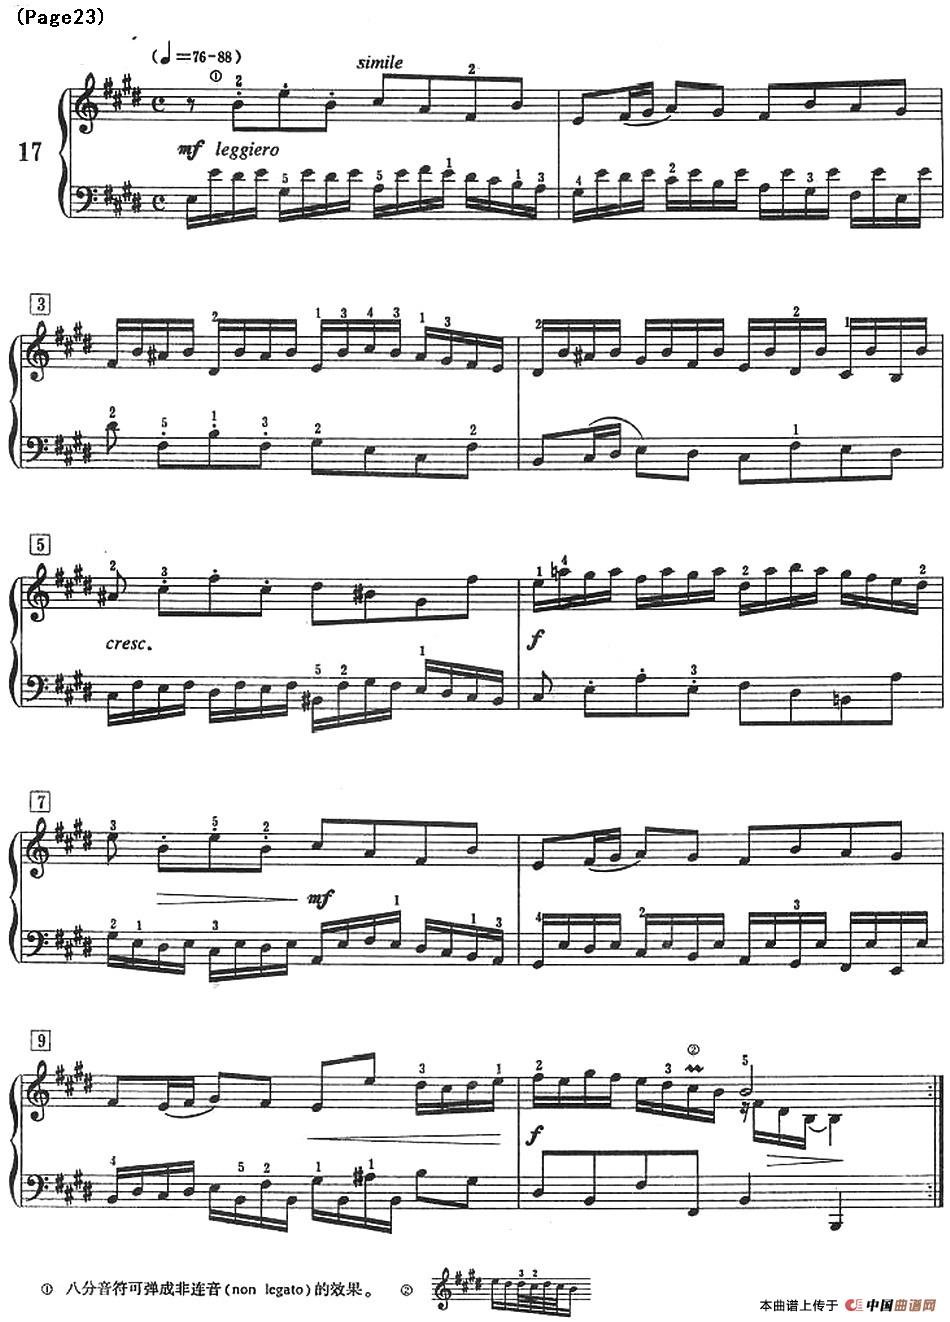 巴赫小前奏曲（NO.17-NO.18）(1)_Bach Little Prelude and Fugue_页面_28.jpg